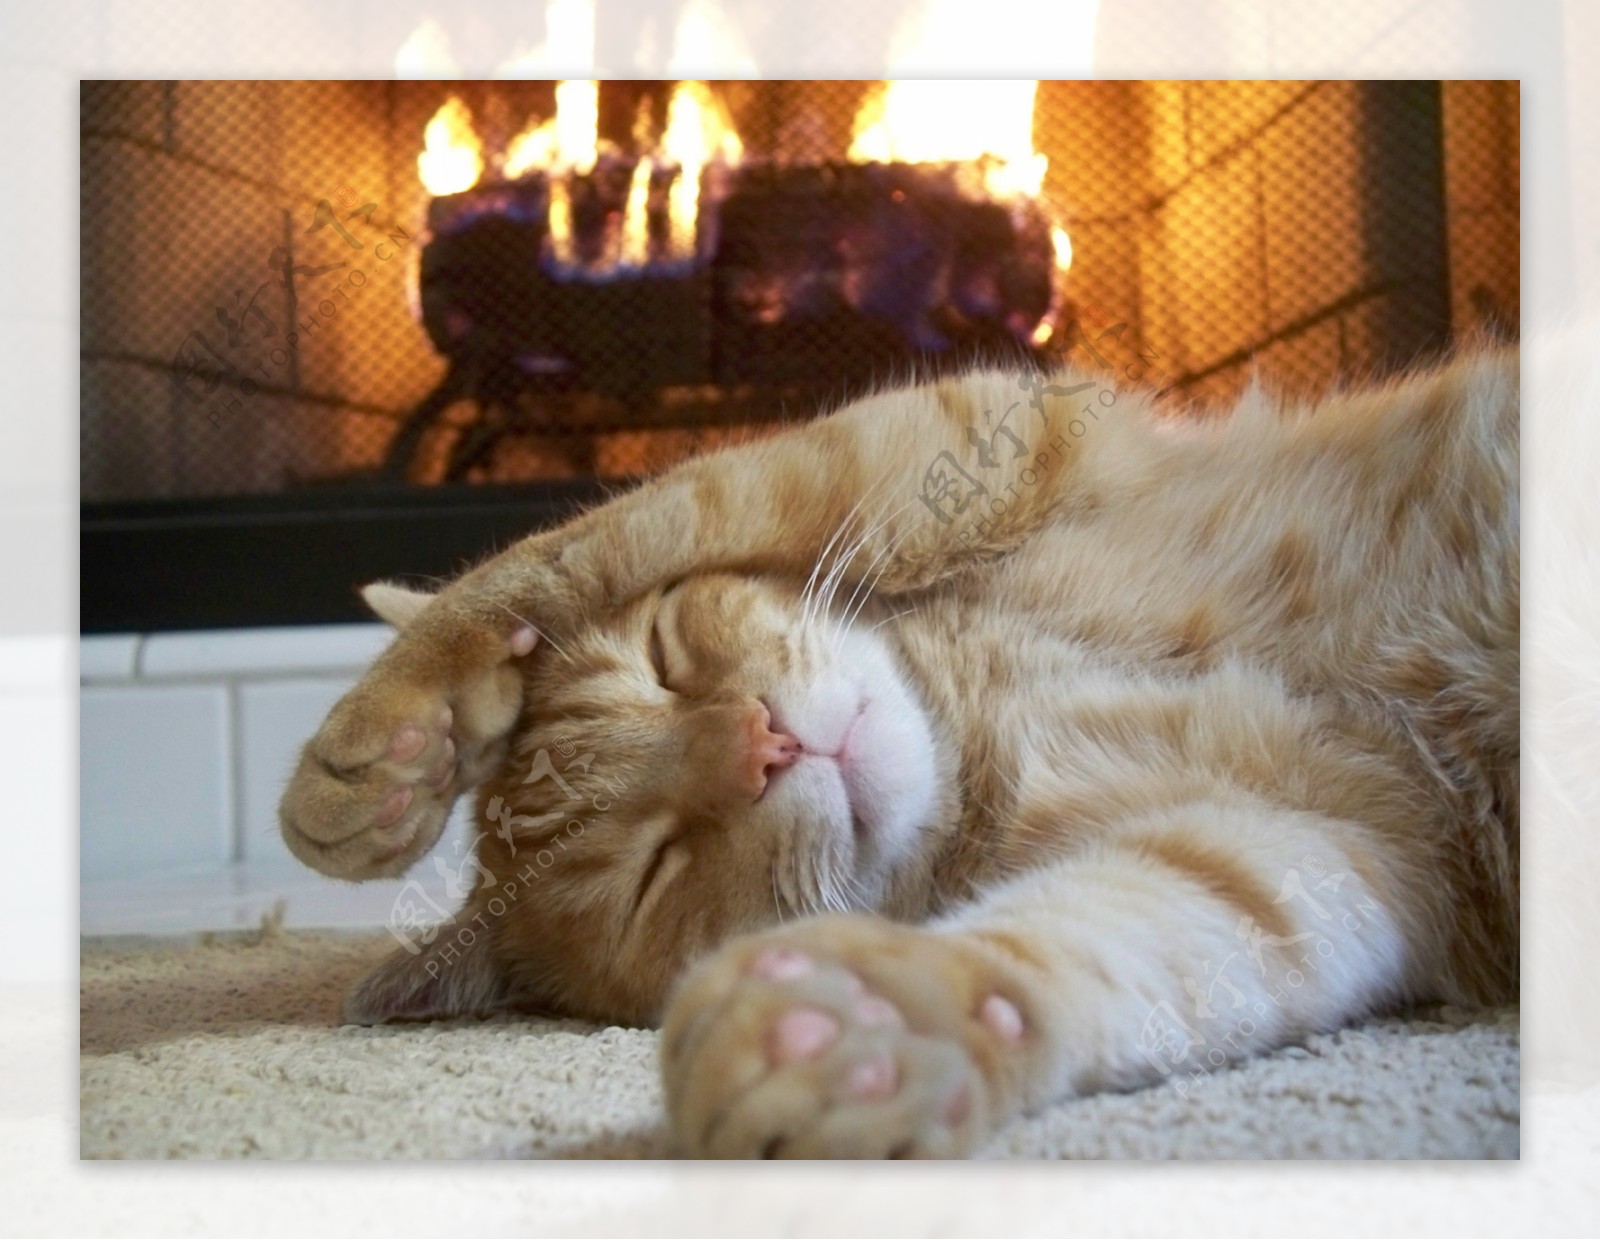 壁炉前睡着的小猫图片